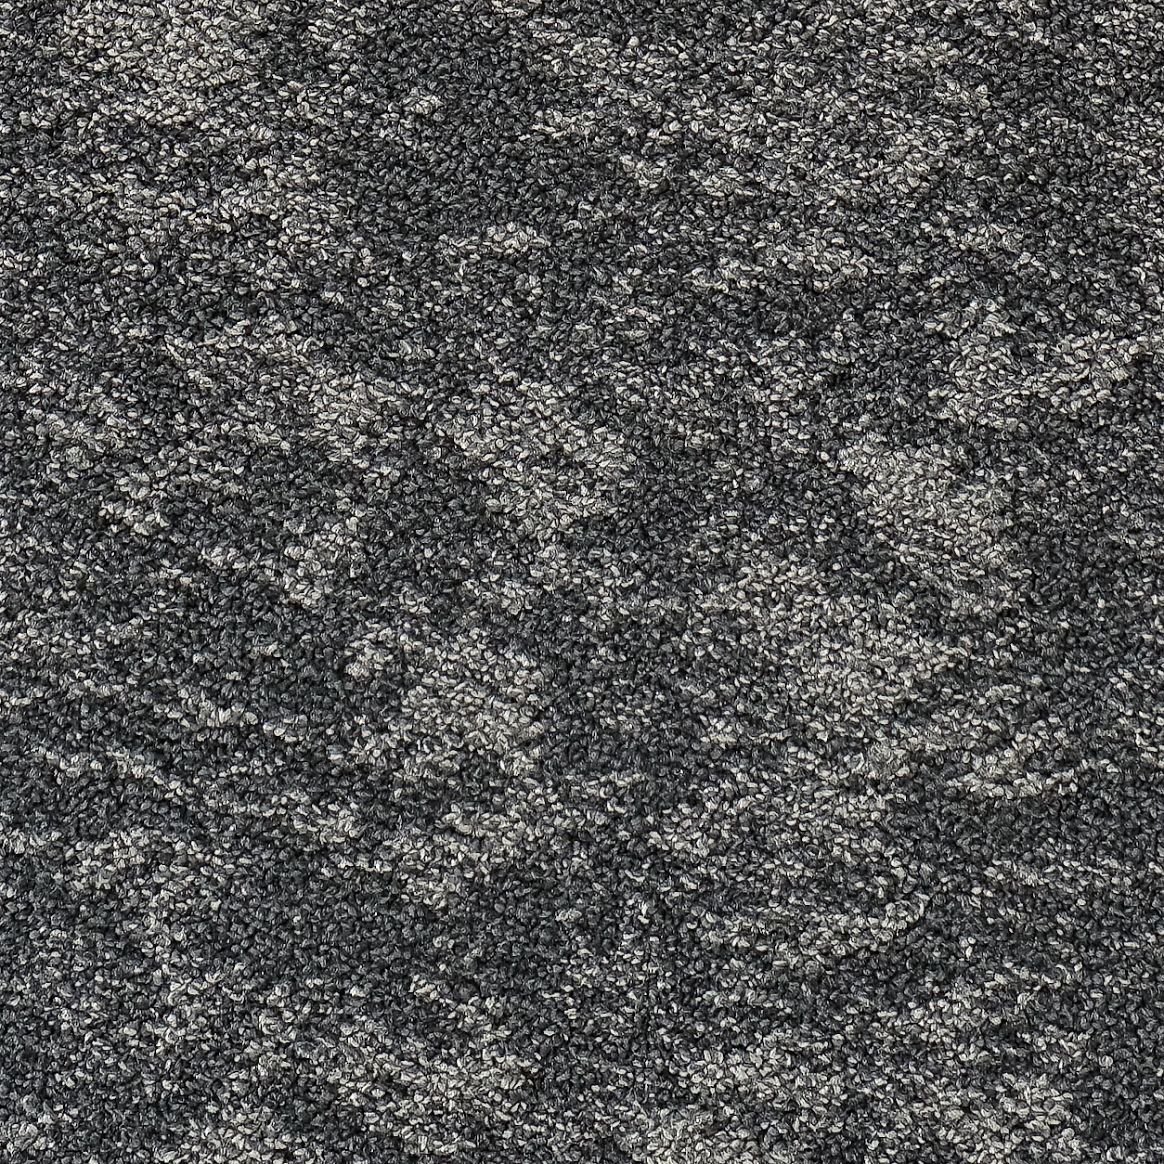 Knit Designer Carpet Tile Swatch